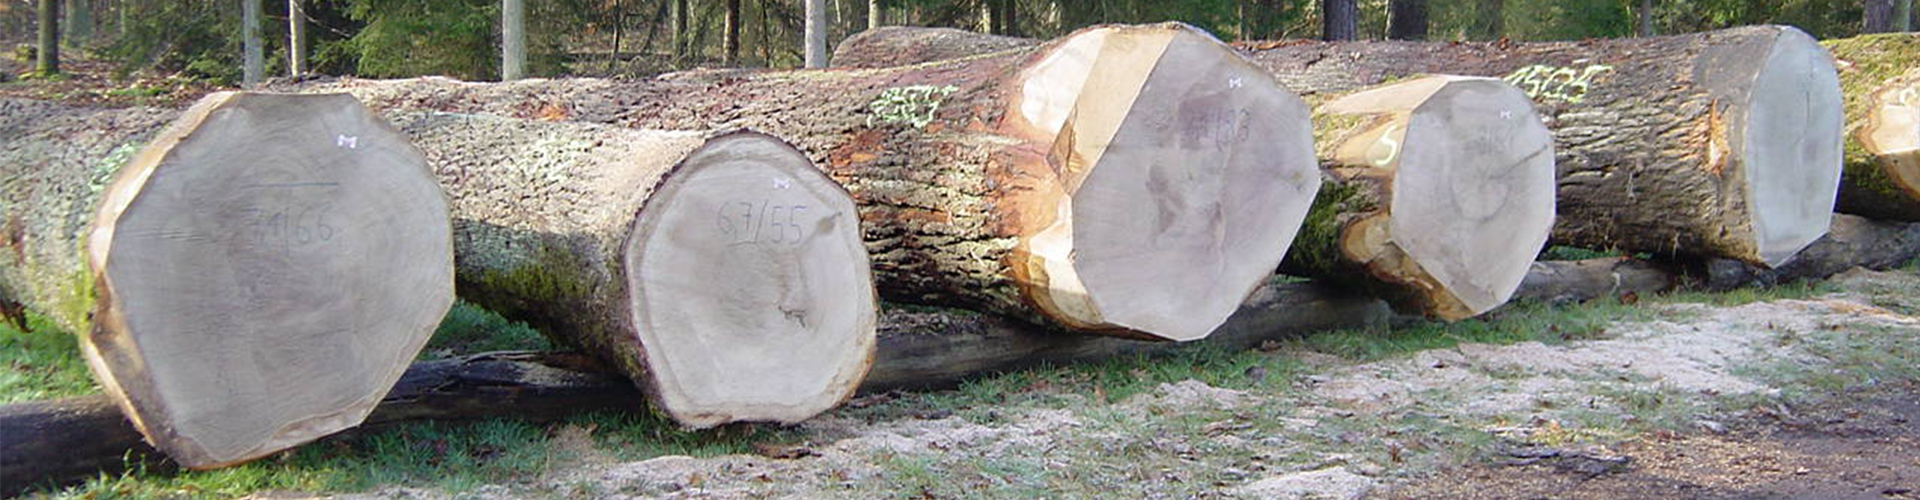 Un'immagine di una presentazione alle gru Commercio di legname